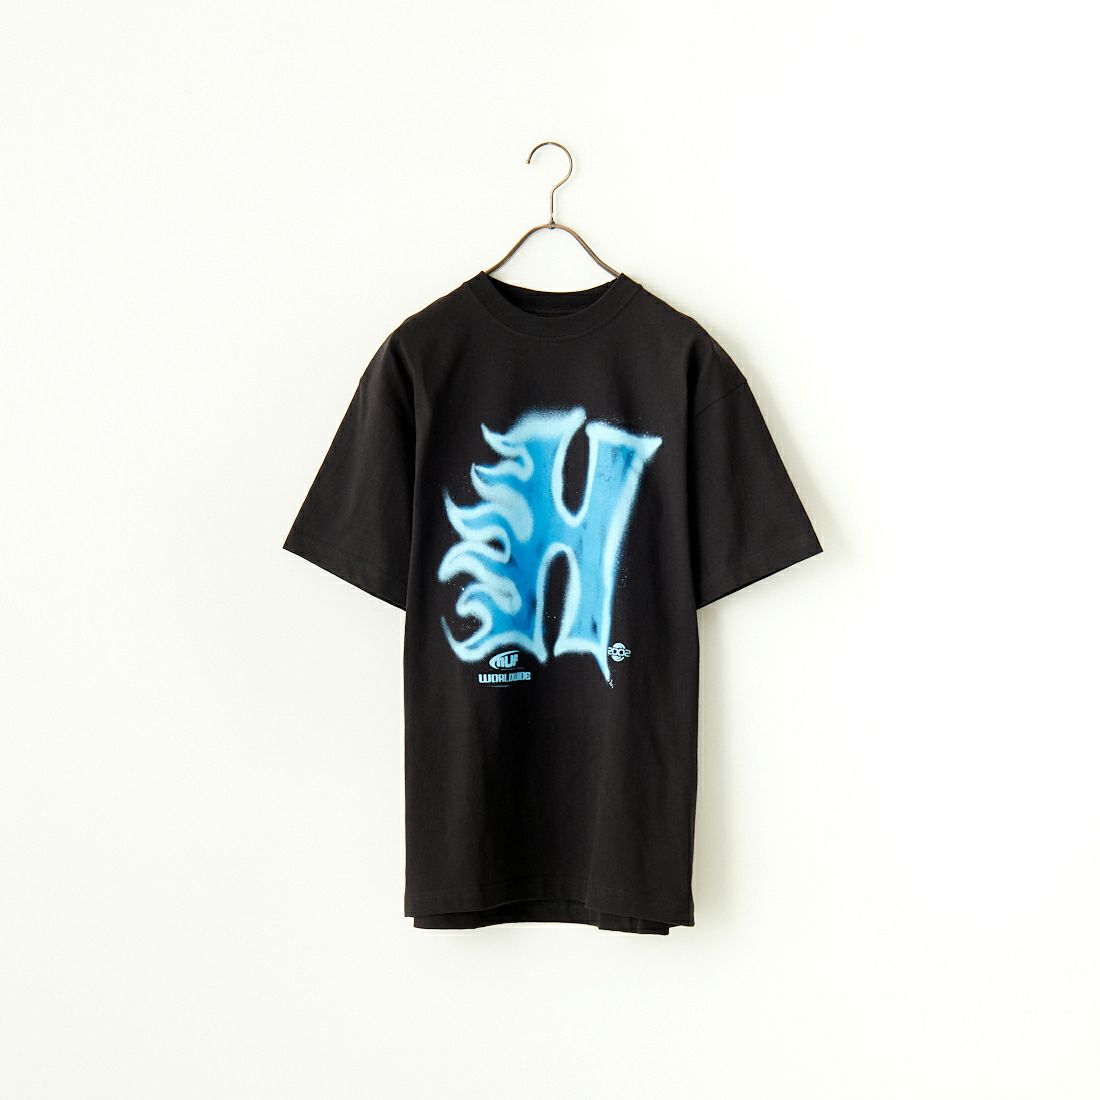 HUF [ハフ] HEAT WAVE Tシャツ [TS02178] BLACK